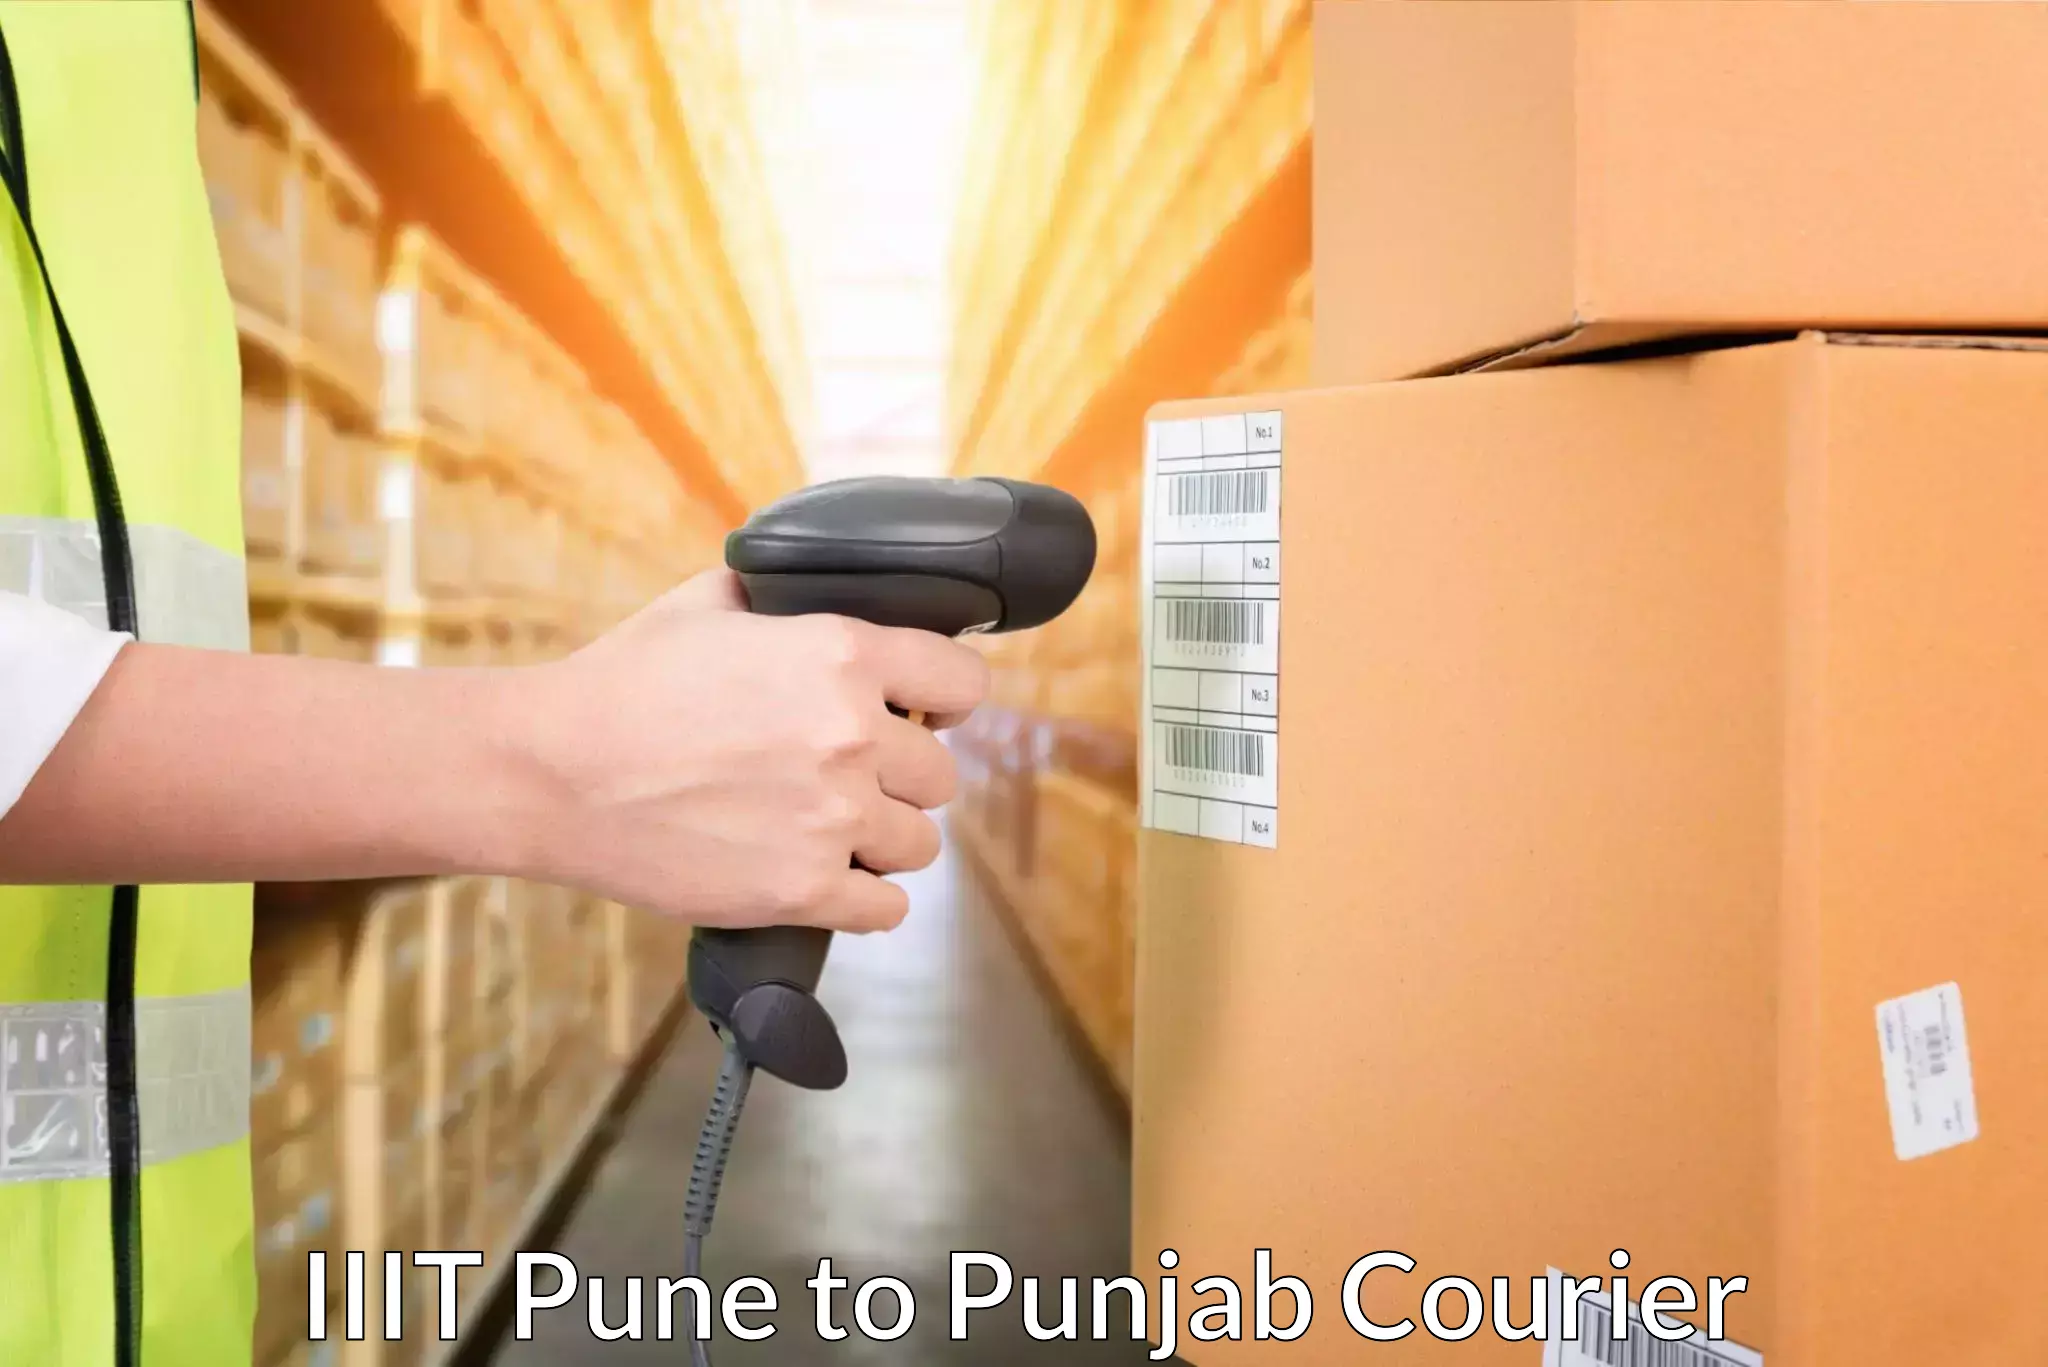 Global logistics network IIIT Pune to Abohar